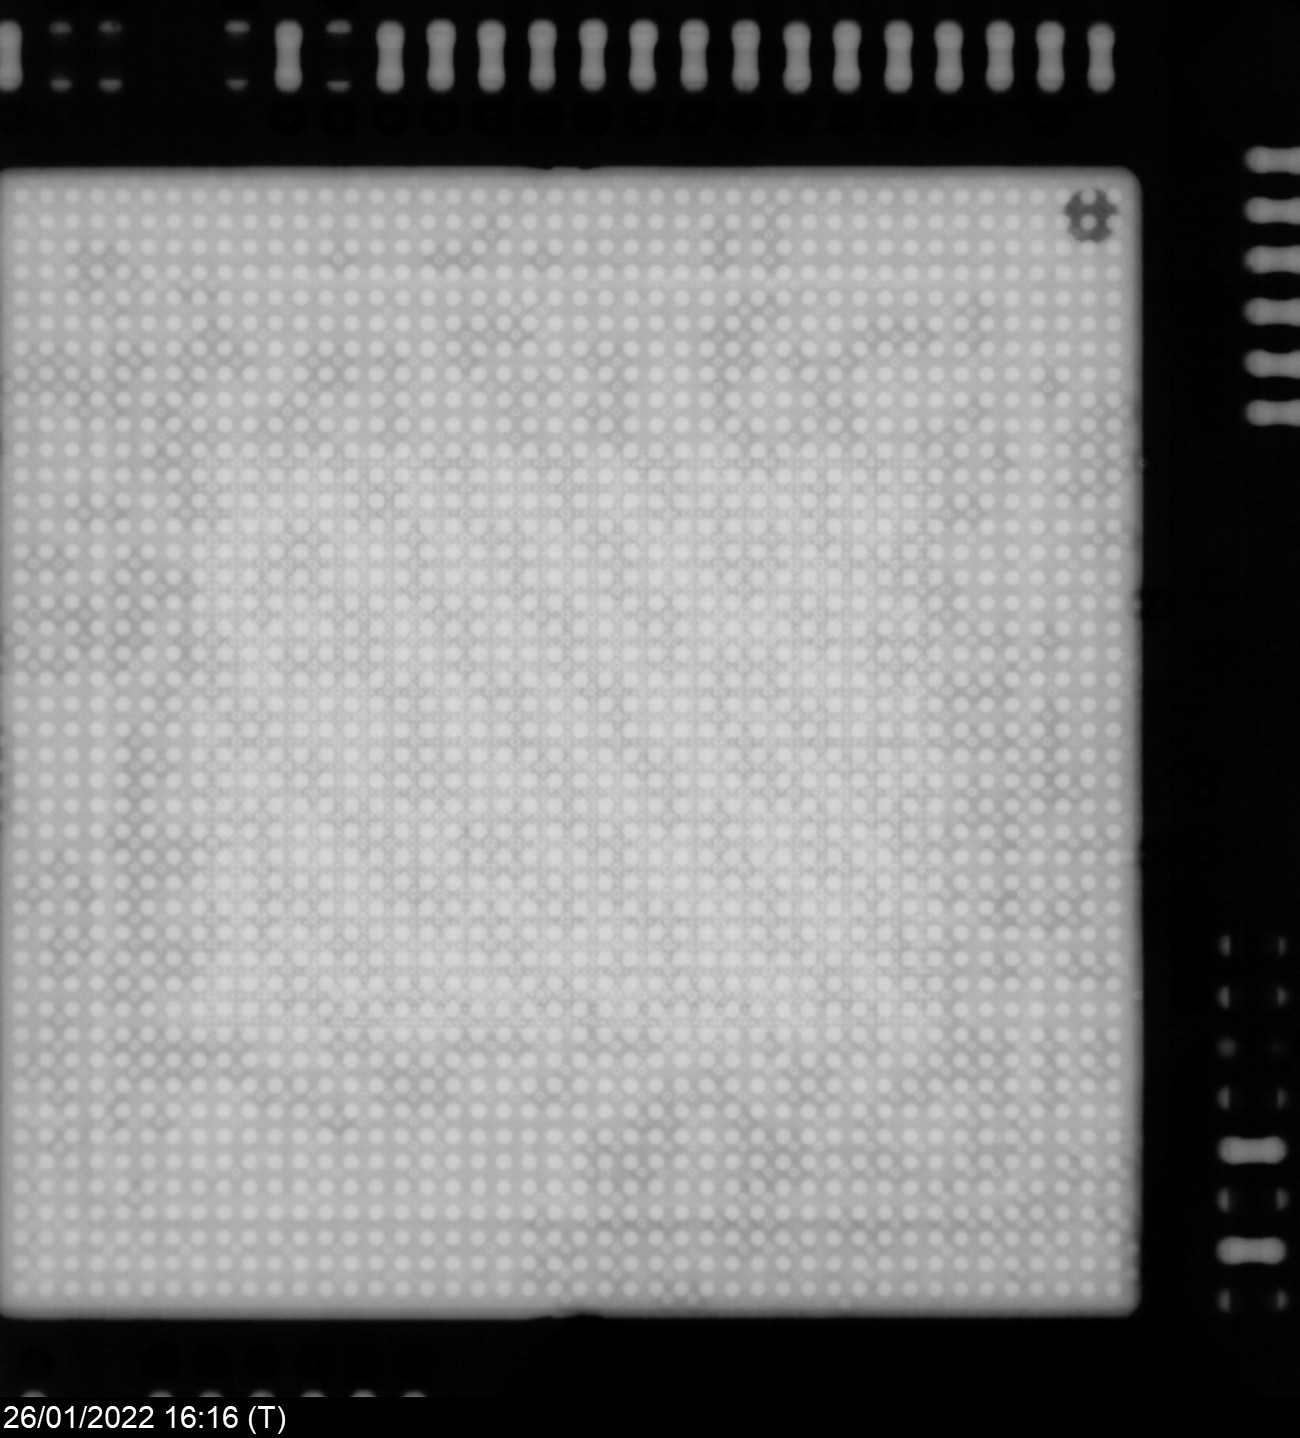 Рис. 8. Изображение смонтированной на плате процессорного модуля микросхемы СнК «СКИФ», полученное на сенсоре стоматологического рентгеновского аппарата.